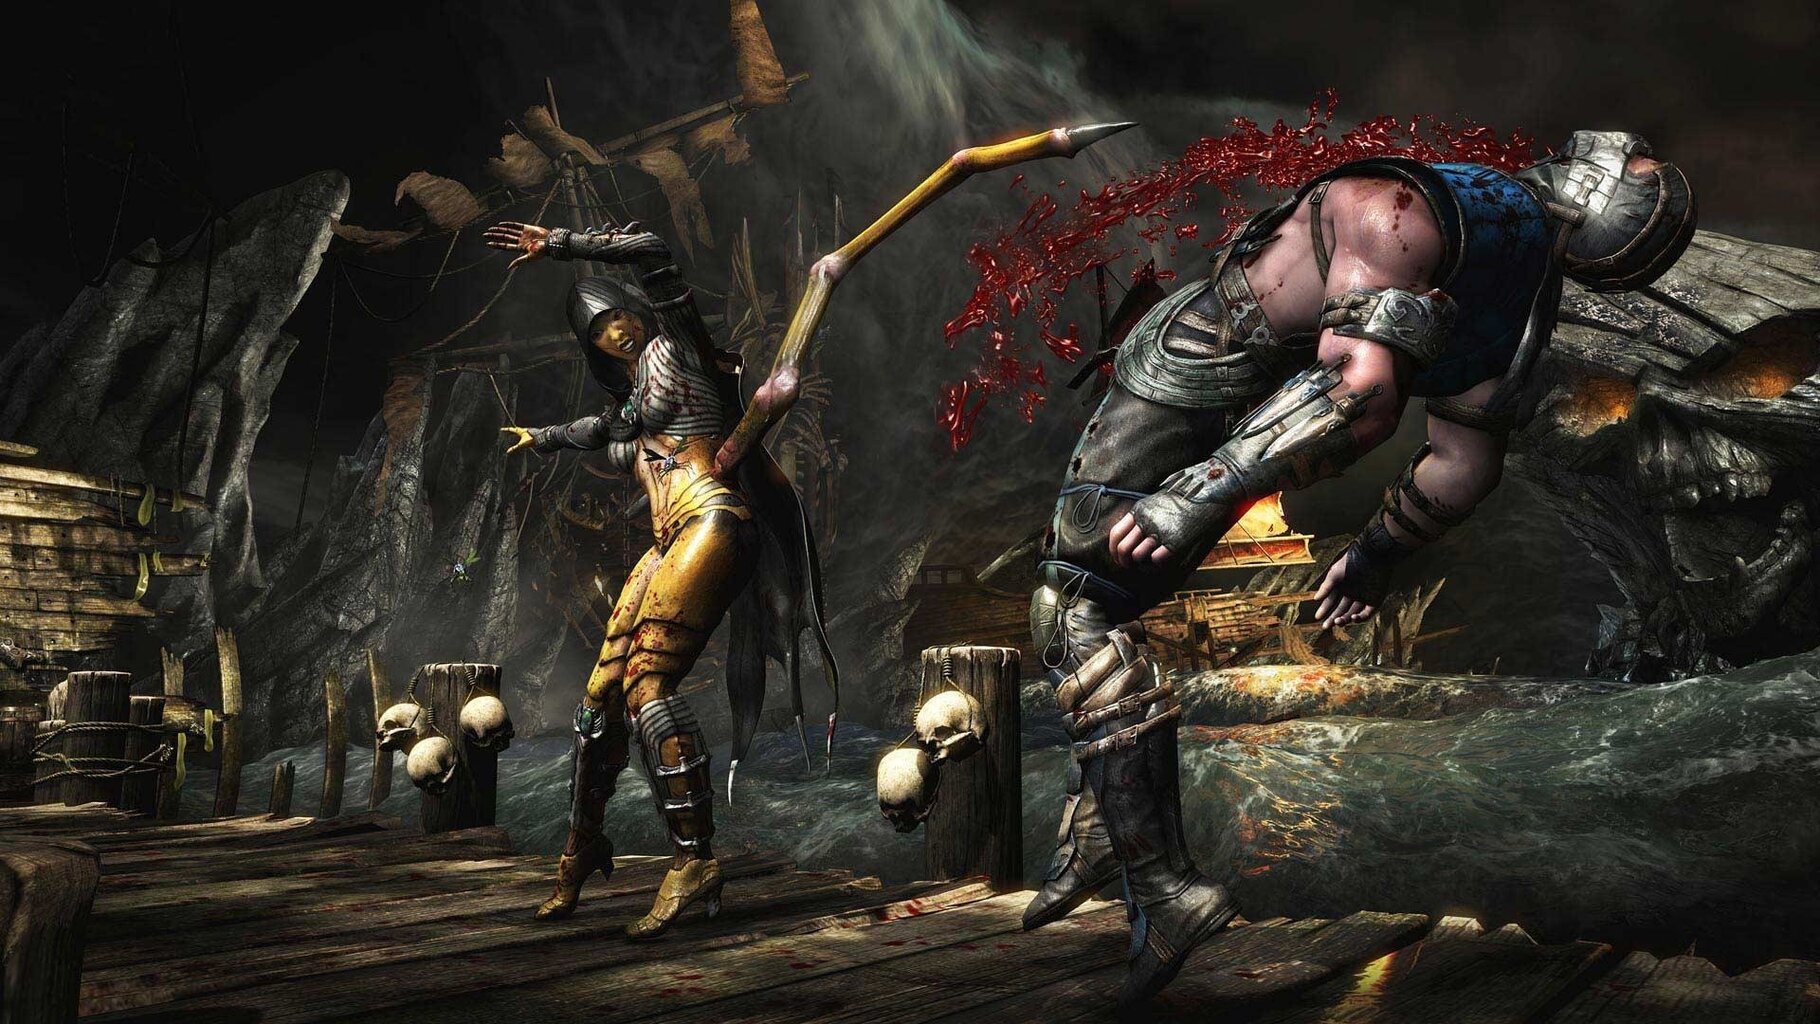 Gra PS4 Mortal Kombat X cena un informācija | Datorspēles | 220.lv